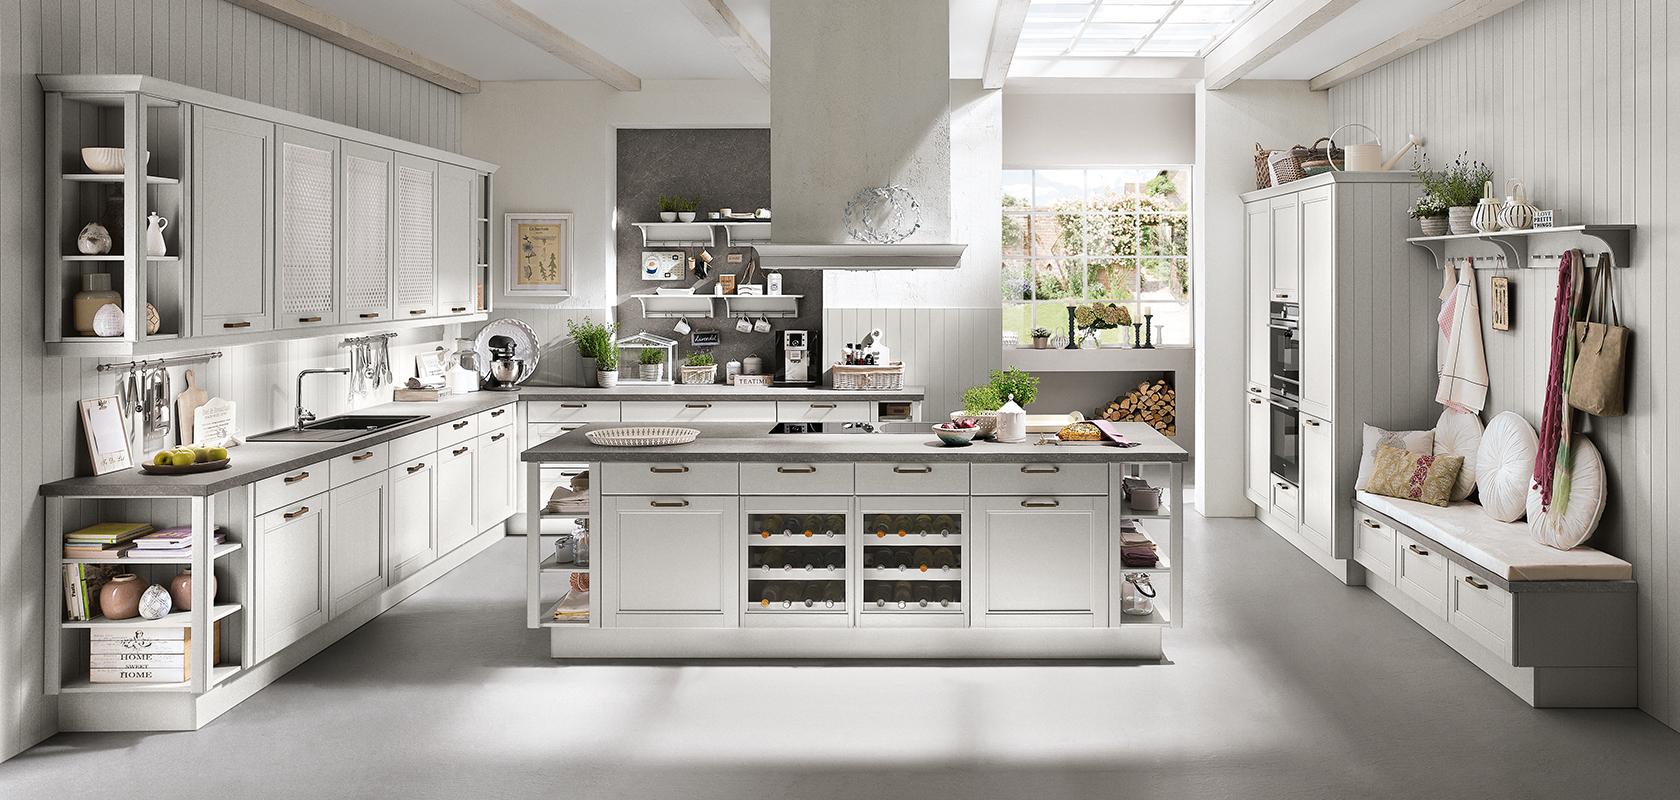 Una cucina luminosa e moderna con armadi bianchi, isola centrale e elettrodomestici in acciaio inossidabile, che mostrano un design elegante e pulito.